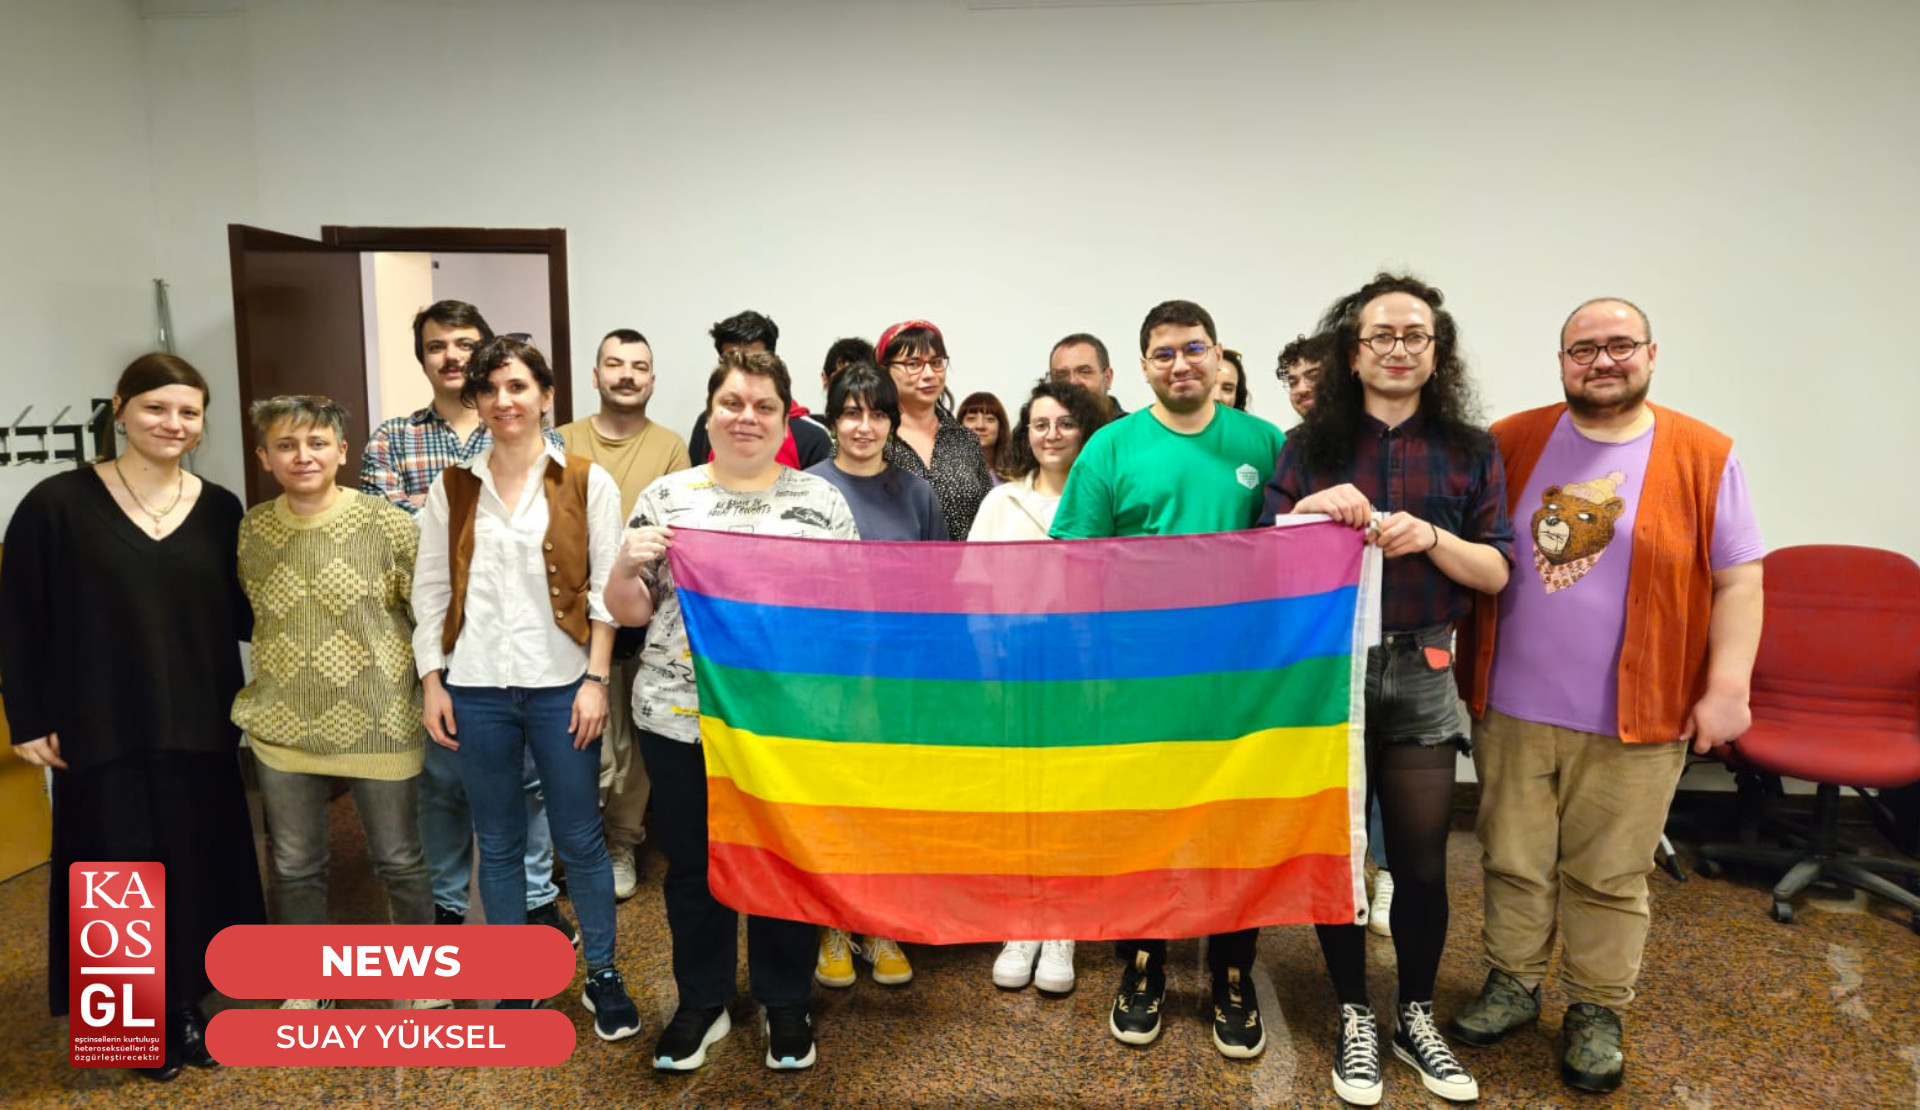 The “Çankaya’s lubunyas are meeting” forum was held   | Kaos GL - News Portal for LGBTI+ News